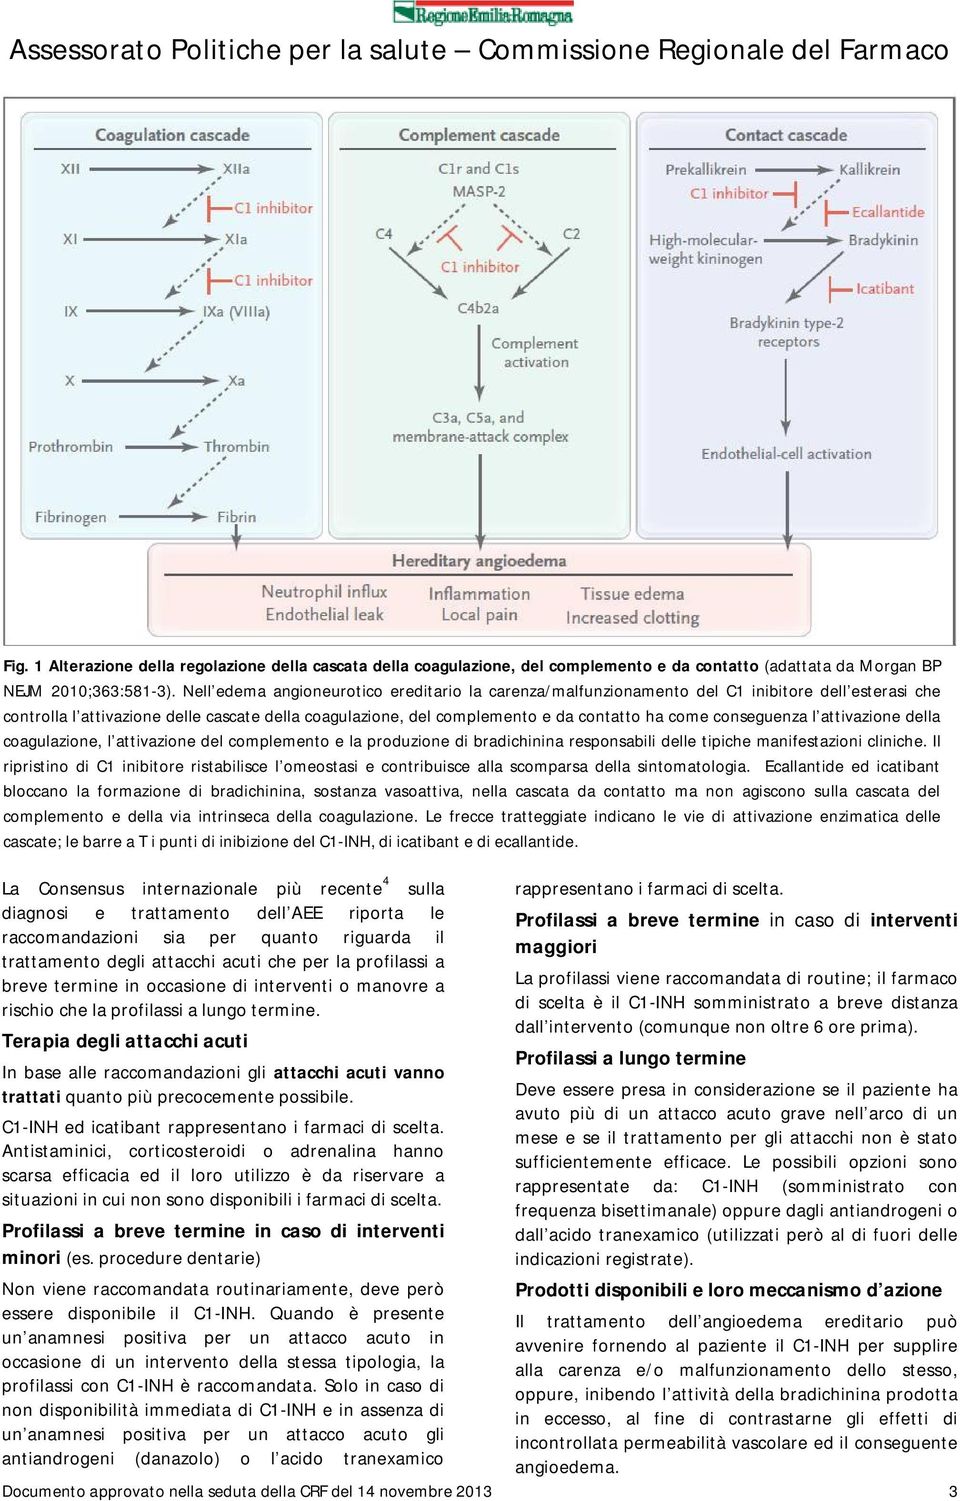 conseguenza l attivazione della coagulazione, l attivazione del complemento e la produzione di bradichinina responsabili delle tipiche manifestazioni cliniche.